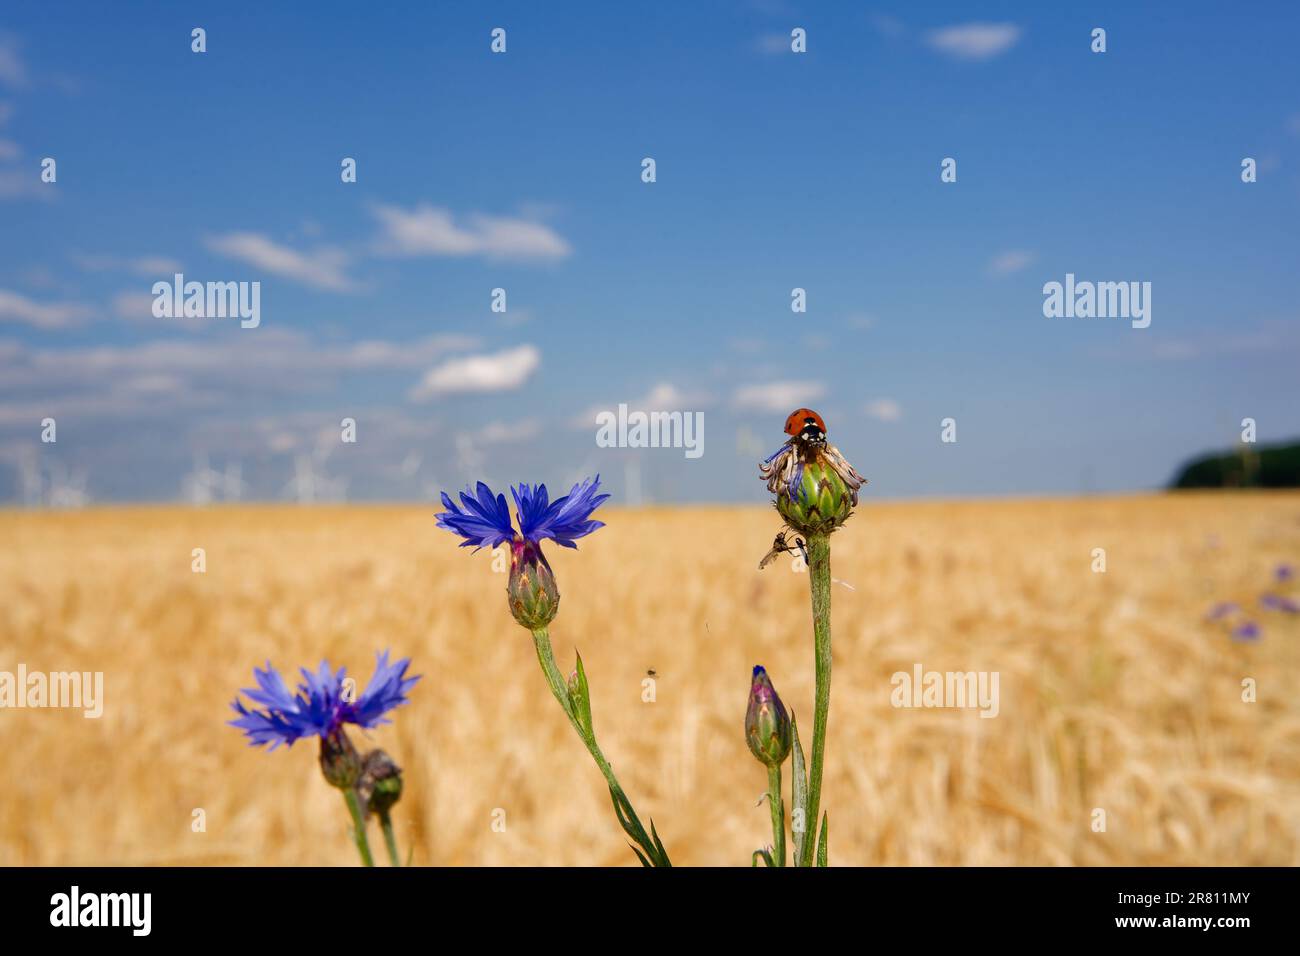 Mariquita en una flor de maíz azul frente a un campo de trigo y cielo azul Foto de stock